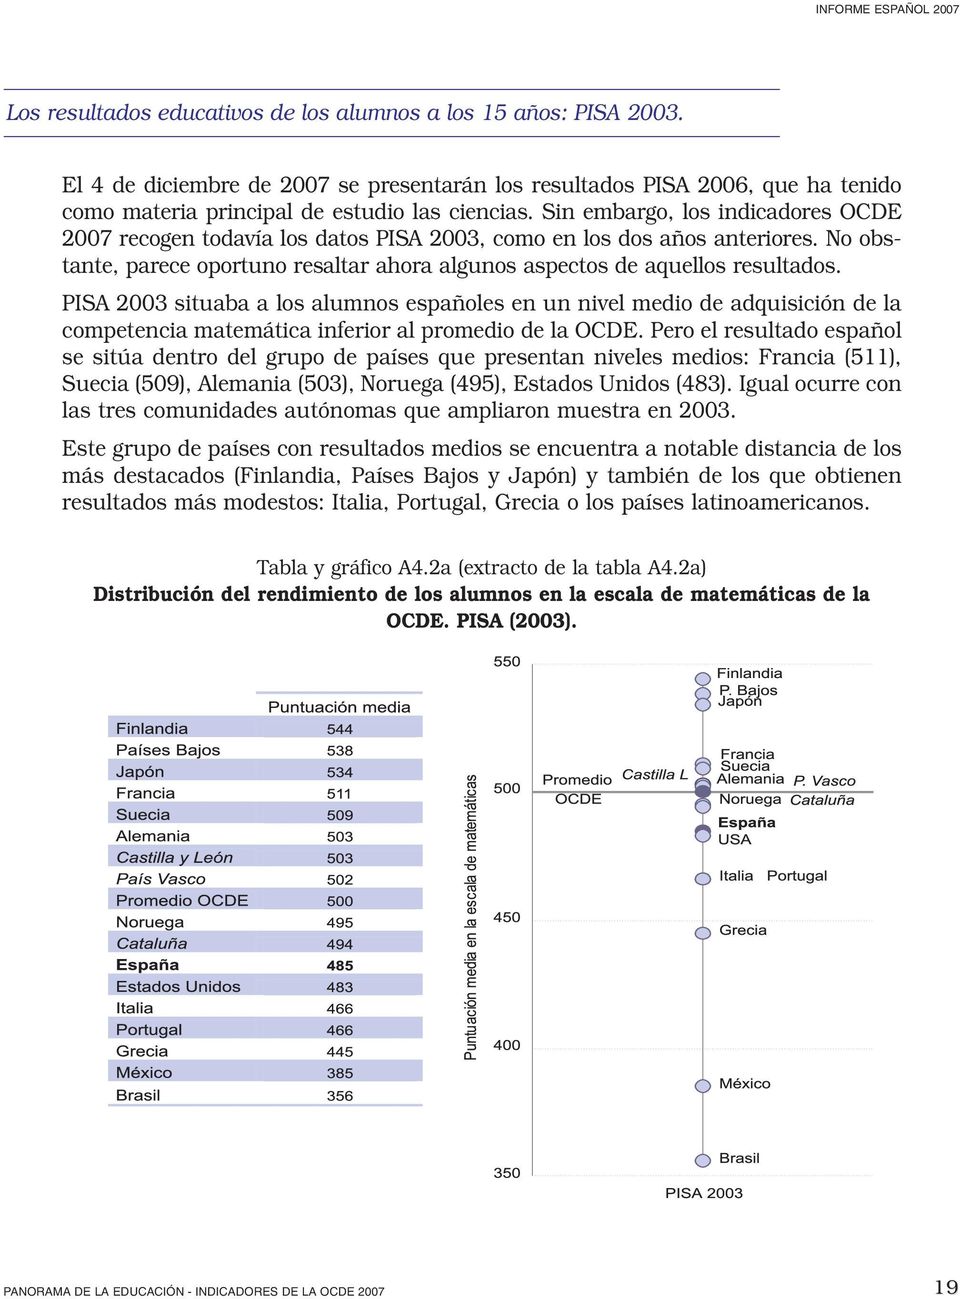 PISA 2003 situaba a los alumnos españoles en un nivel medio de adquisición de la competencia matemática inferior al promedio de la OCDE.